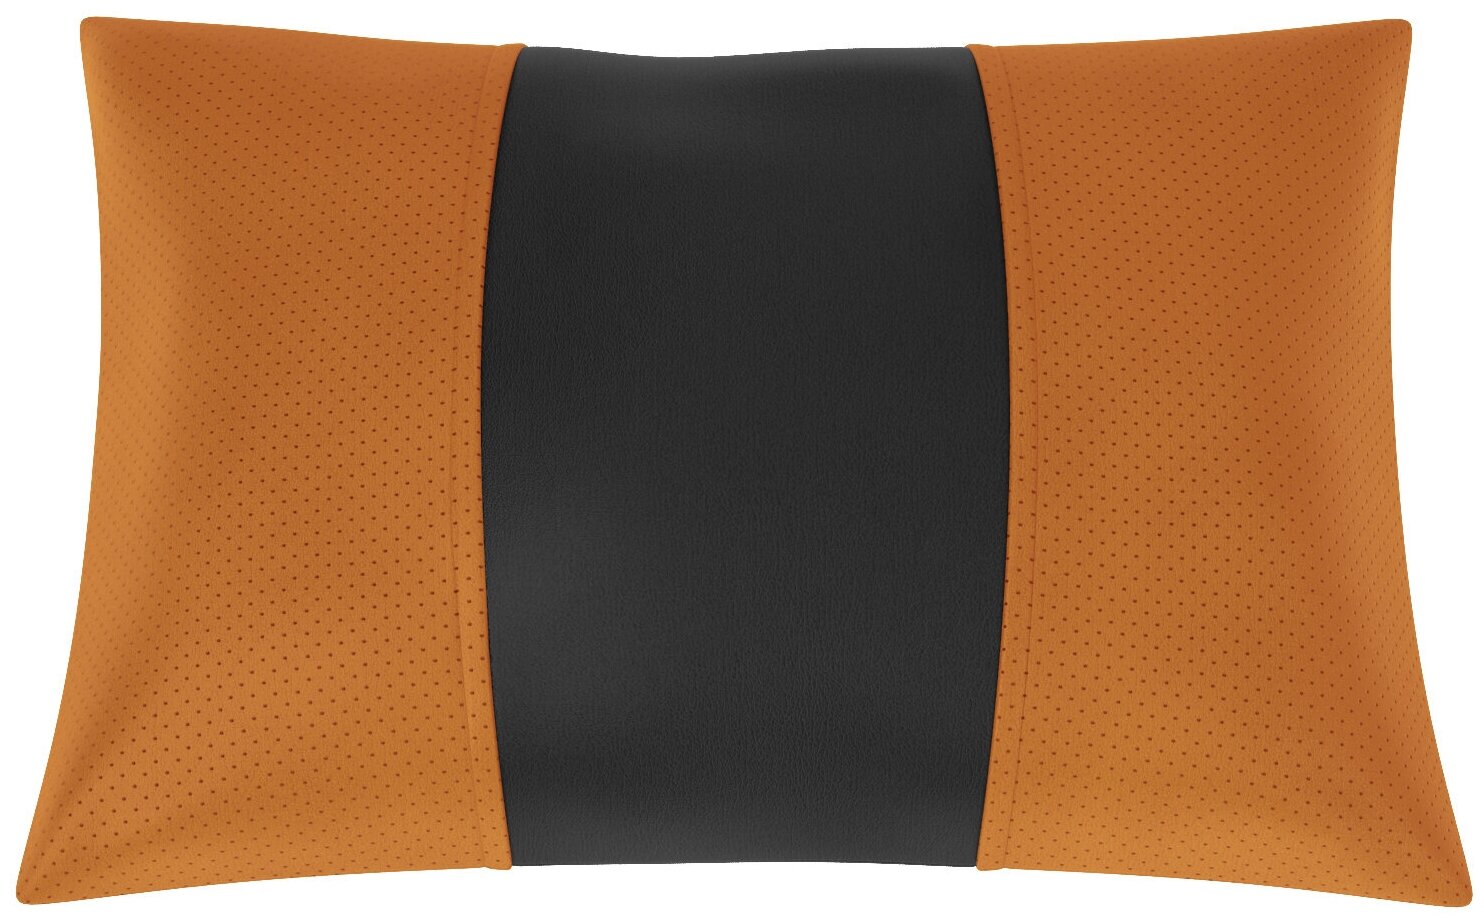 Автомобильная подушка для KIA Optima (Киа Оптима). Экокожа. Середина: чёрная гладкая экокожа. Боковины: оранжевая экокожа с перфорацией. 1 шт.